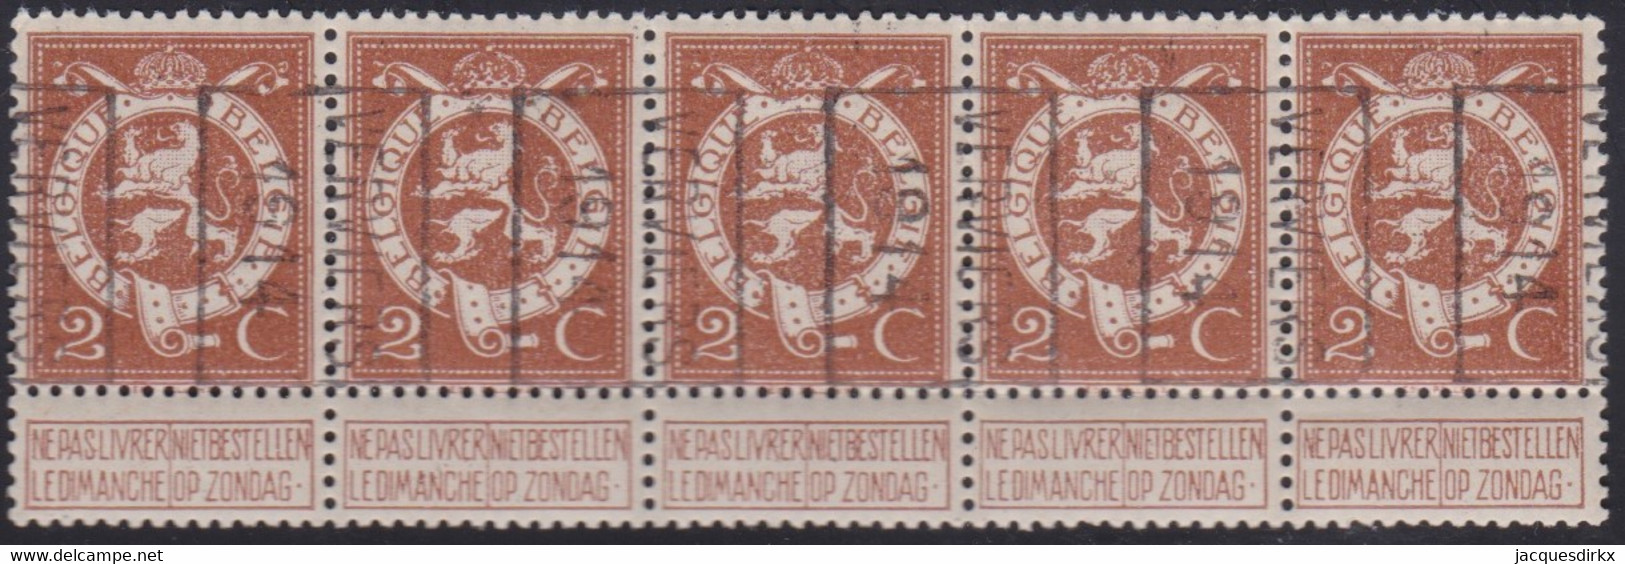 Belgie   .  OBP   .   Strook 5 Zegels 2381   (2 Paren)      .     **   .     Postfris  . / .   Neuf SANS Charniére - Roller Precancels 1910-19